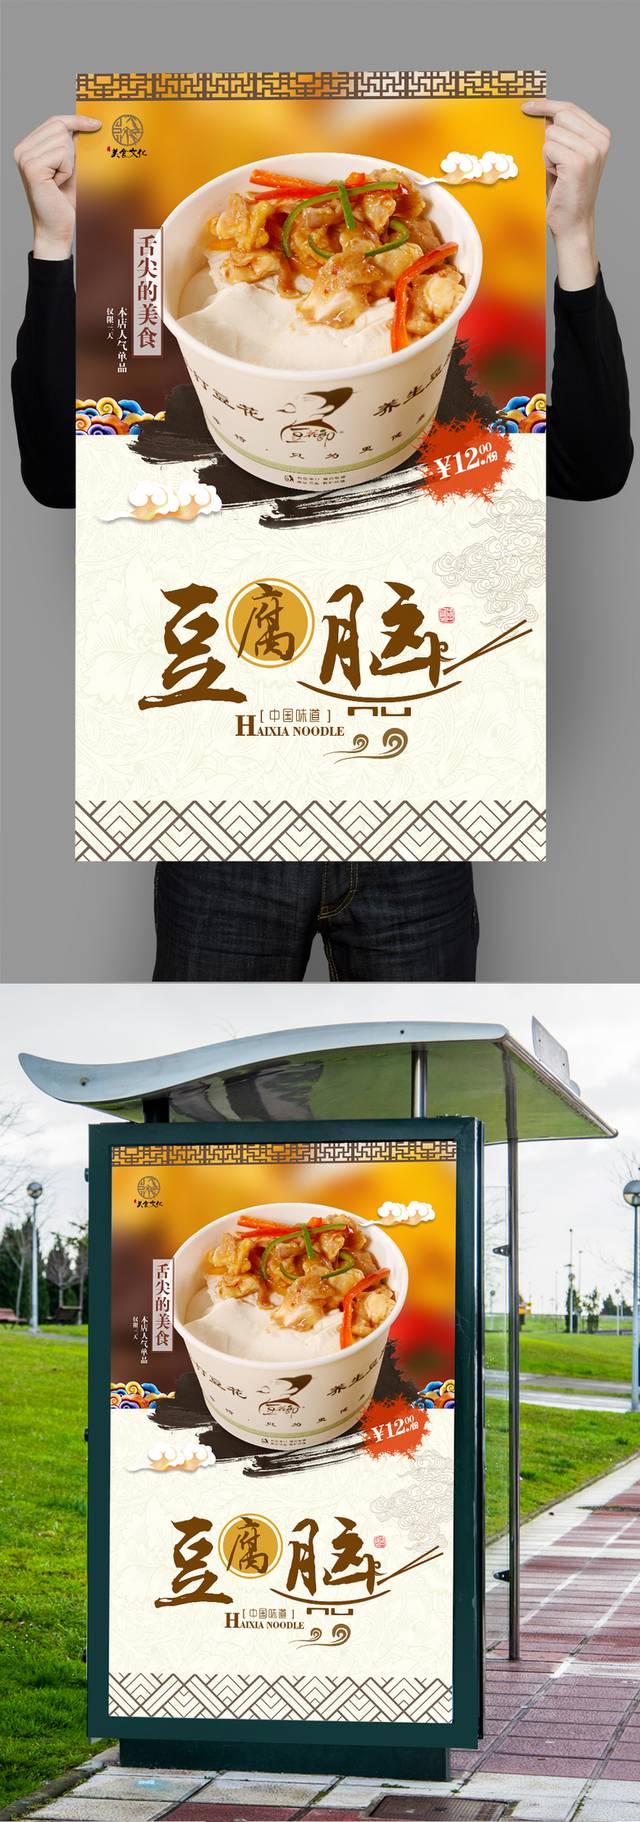 高清豆腐脑美食宣传海报设计